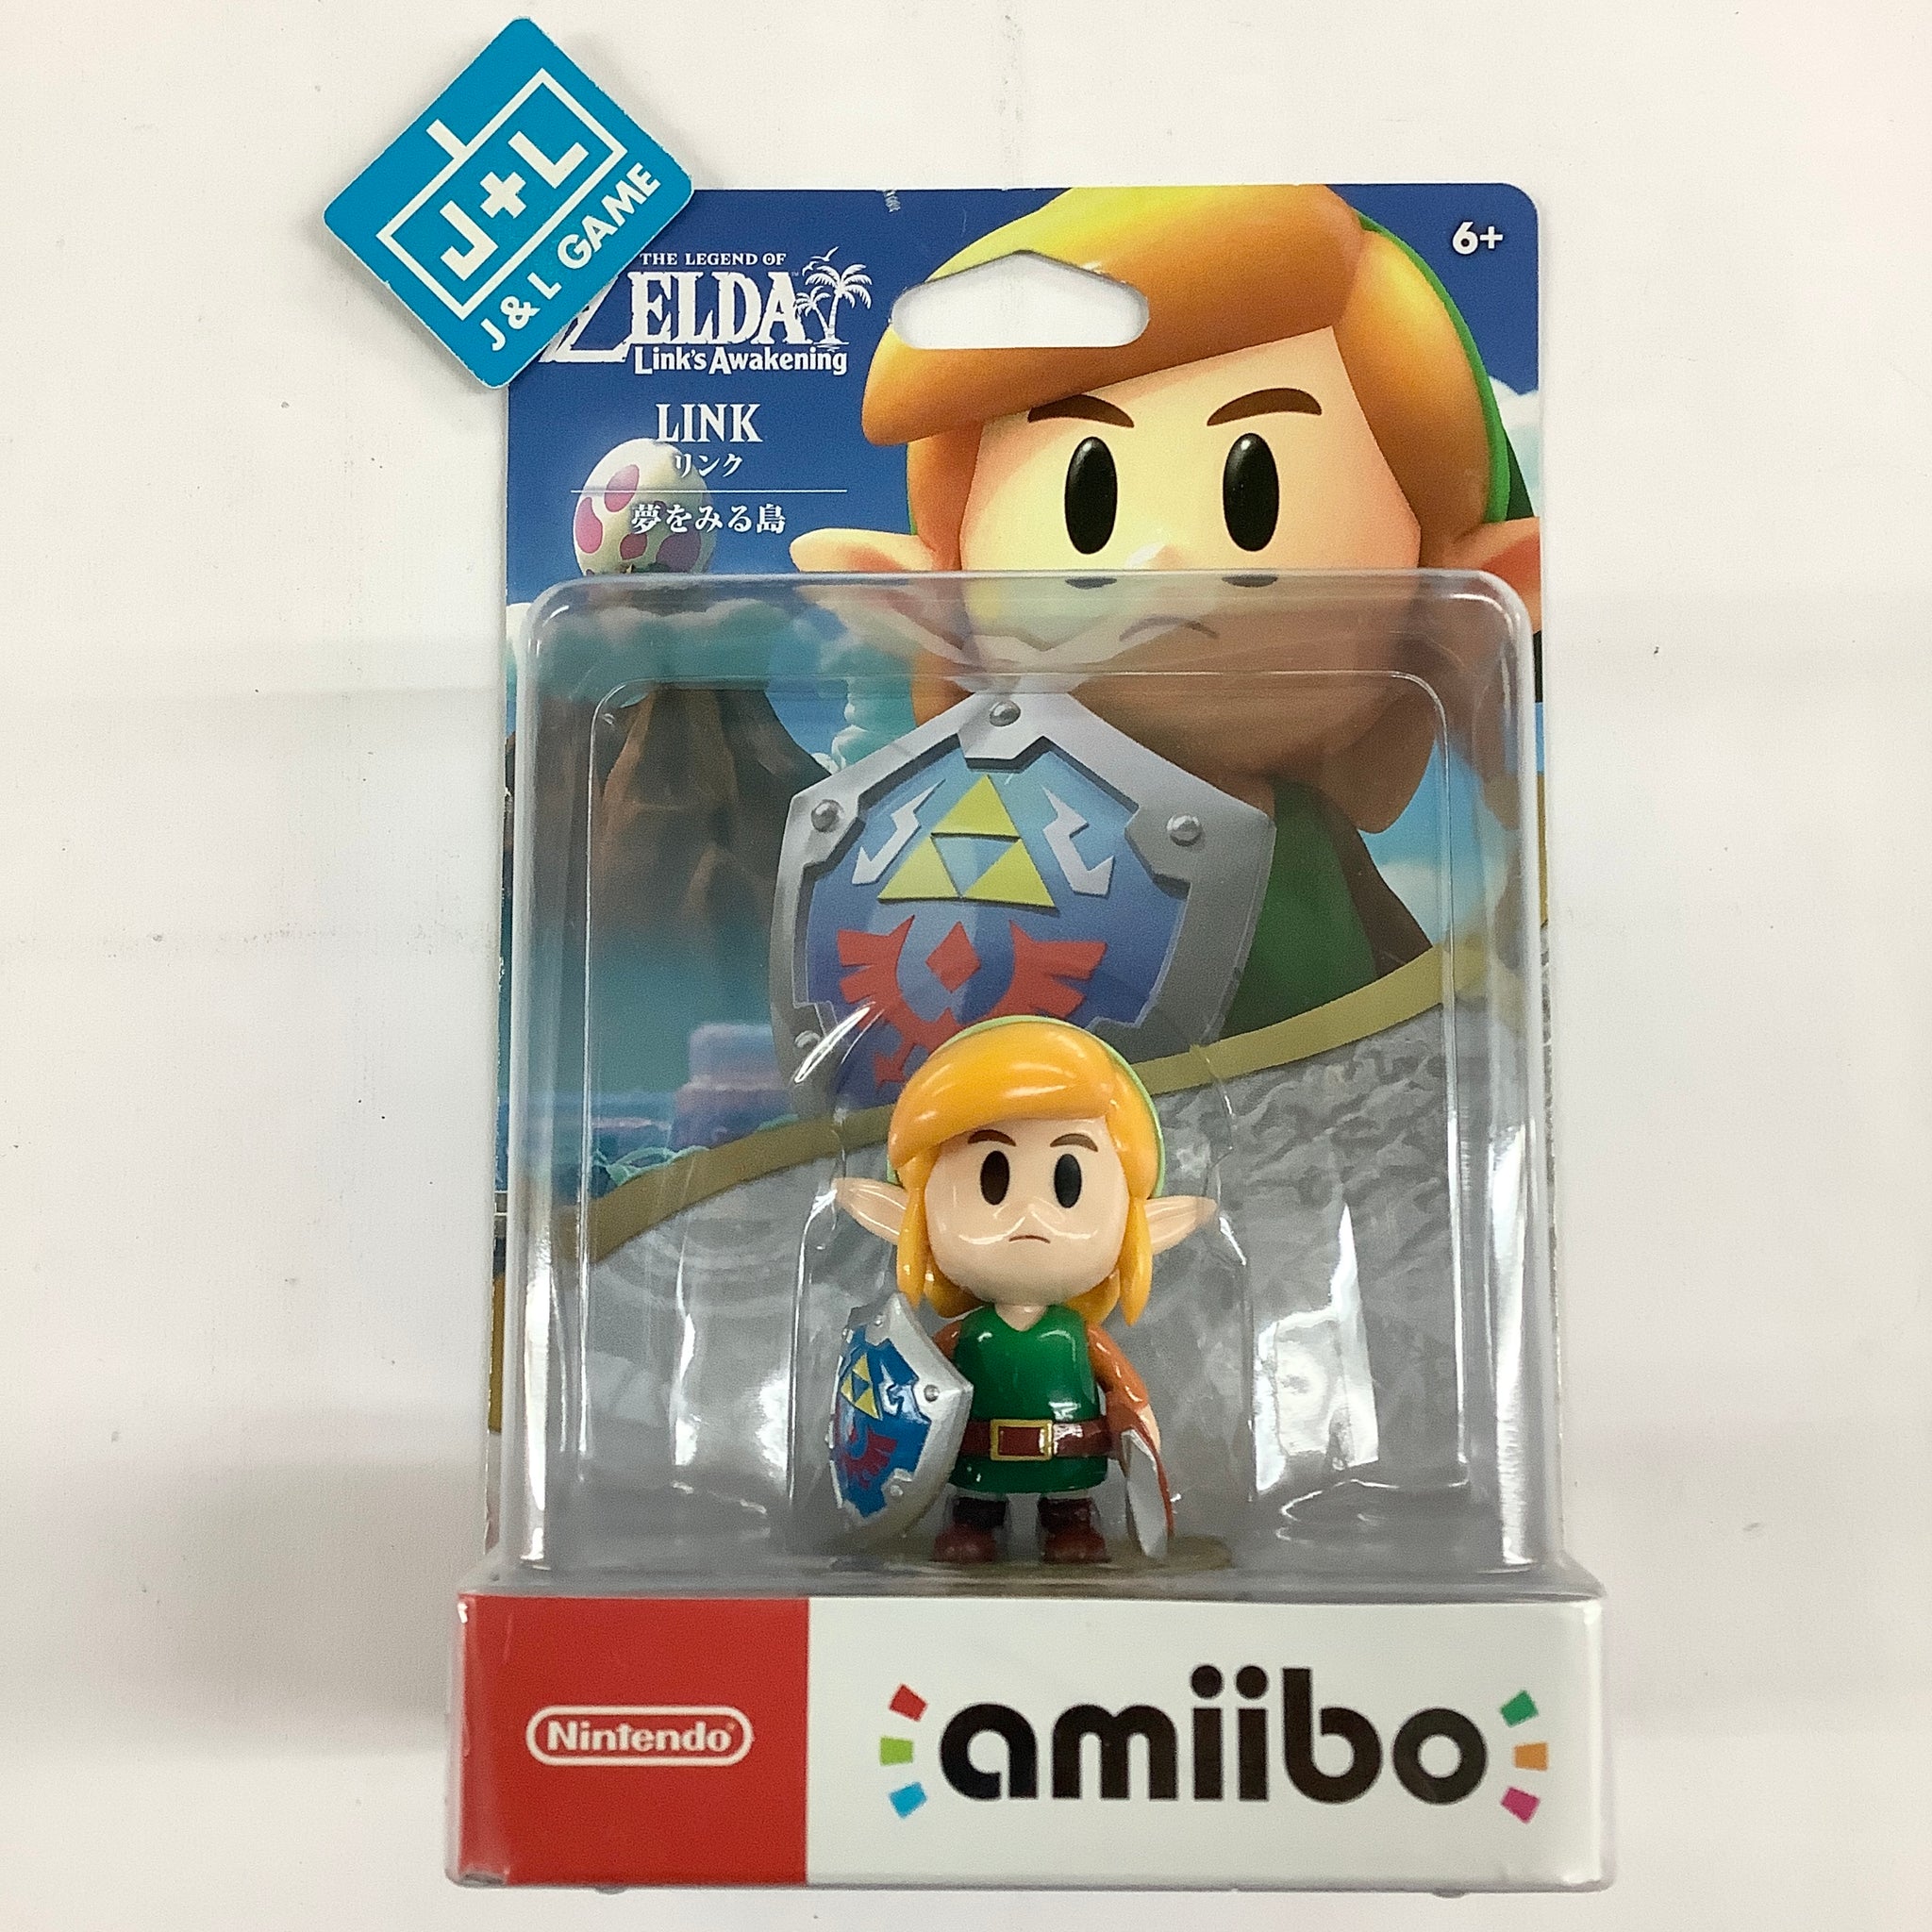 The Legend of Zelda: Link's Awakening - Nintendo Switch